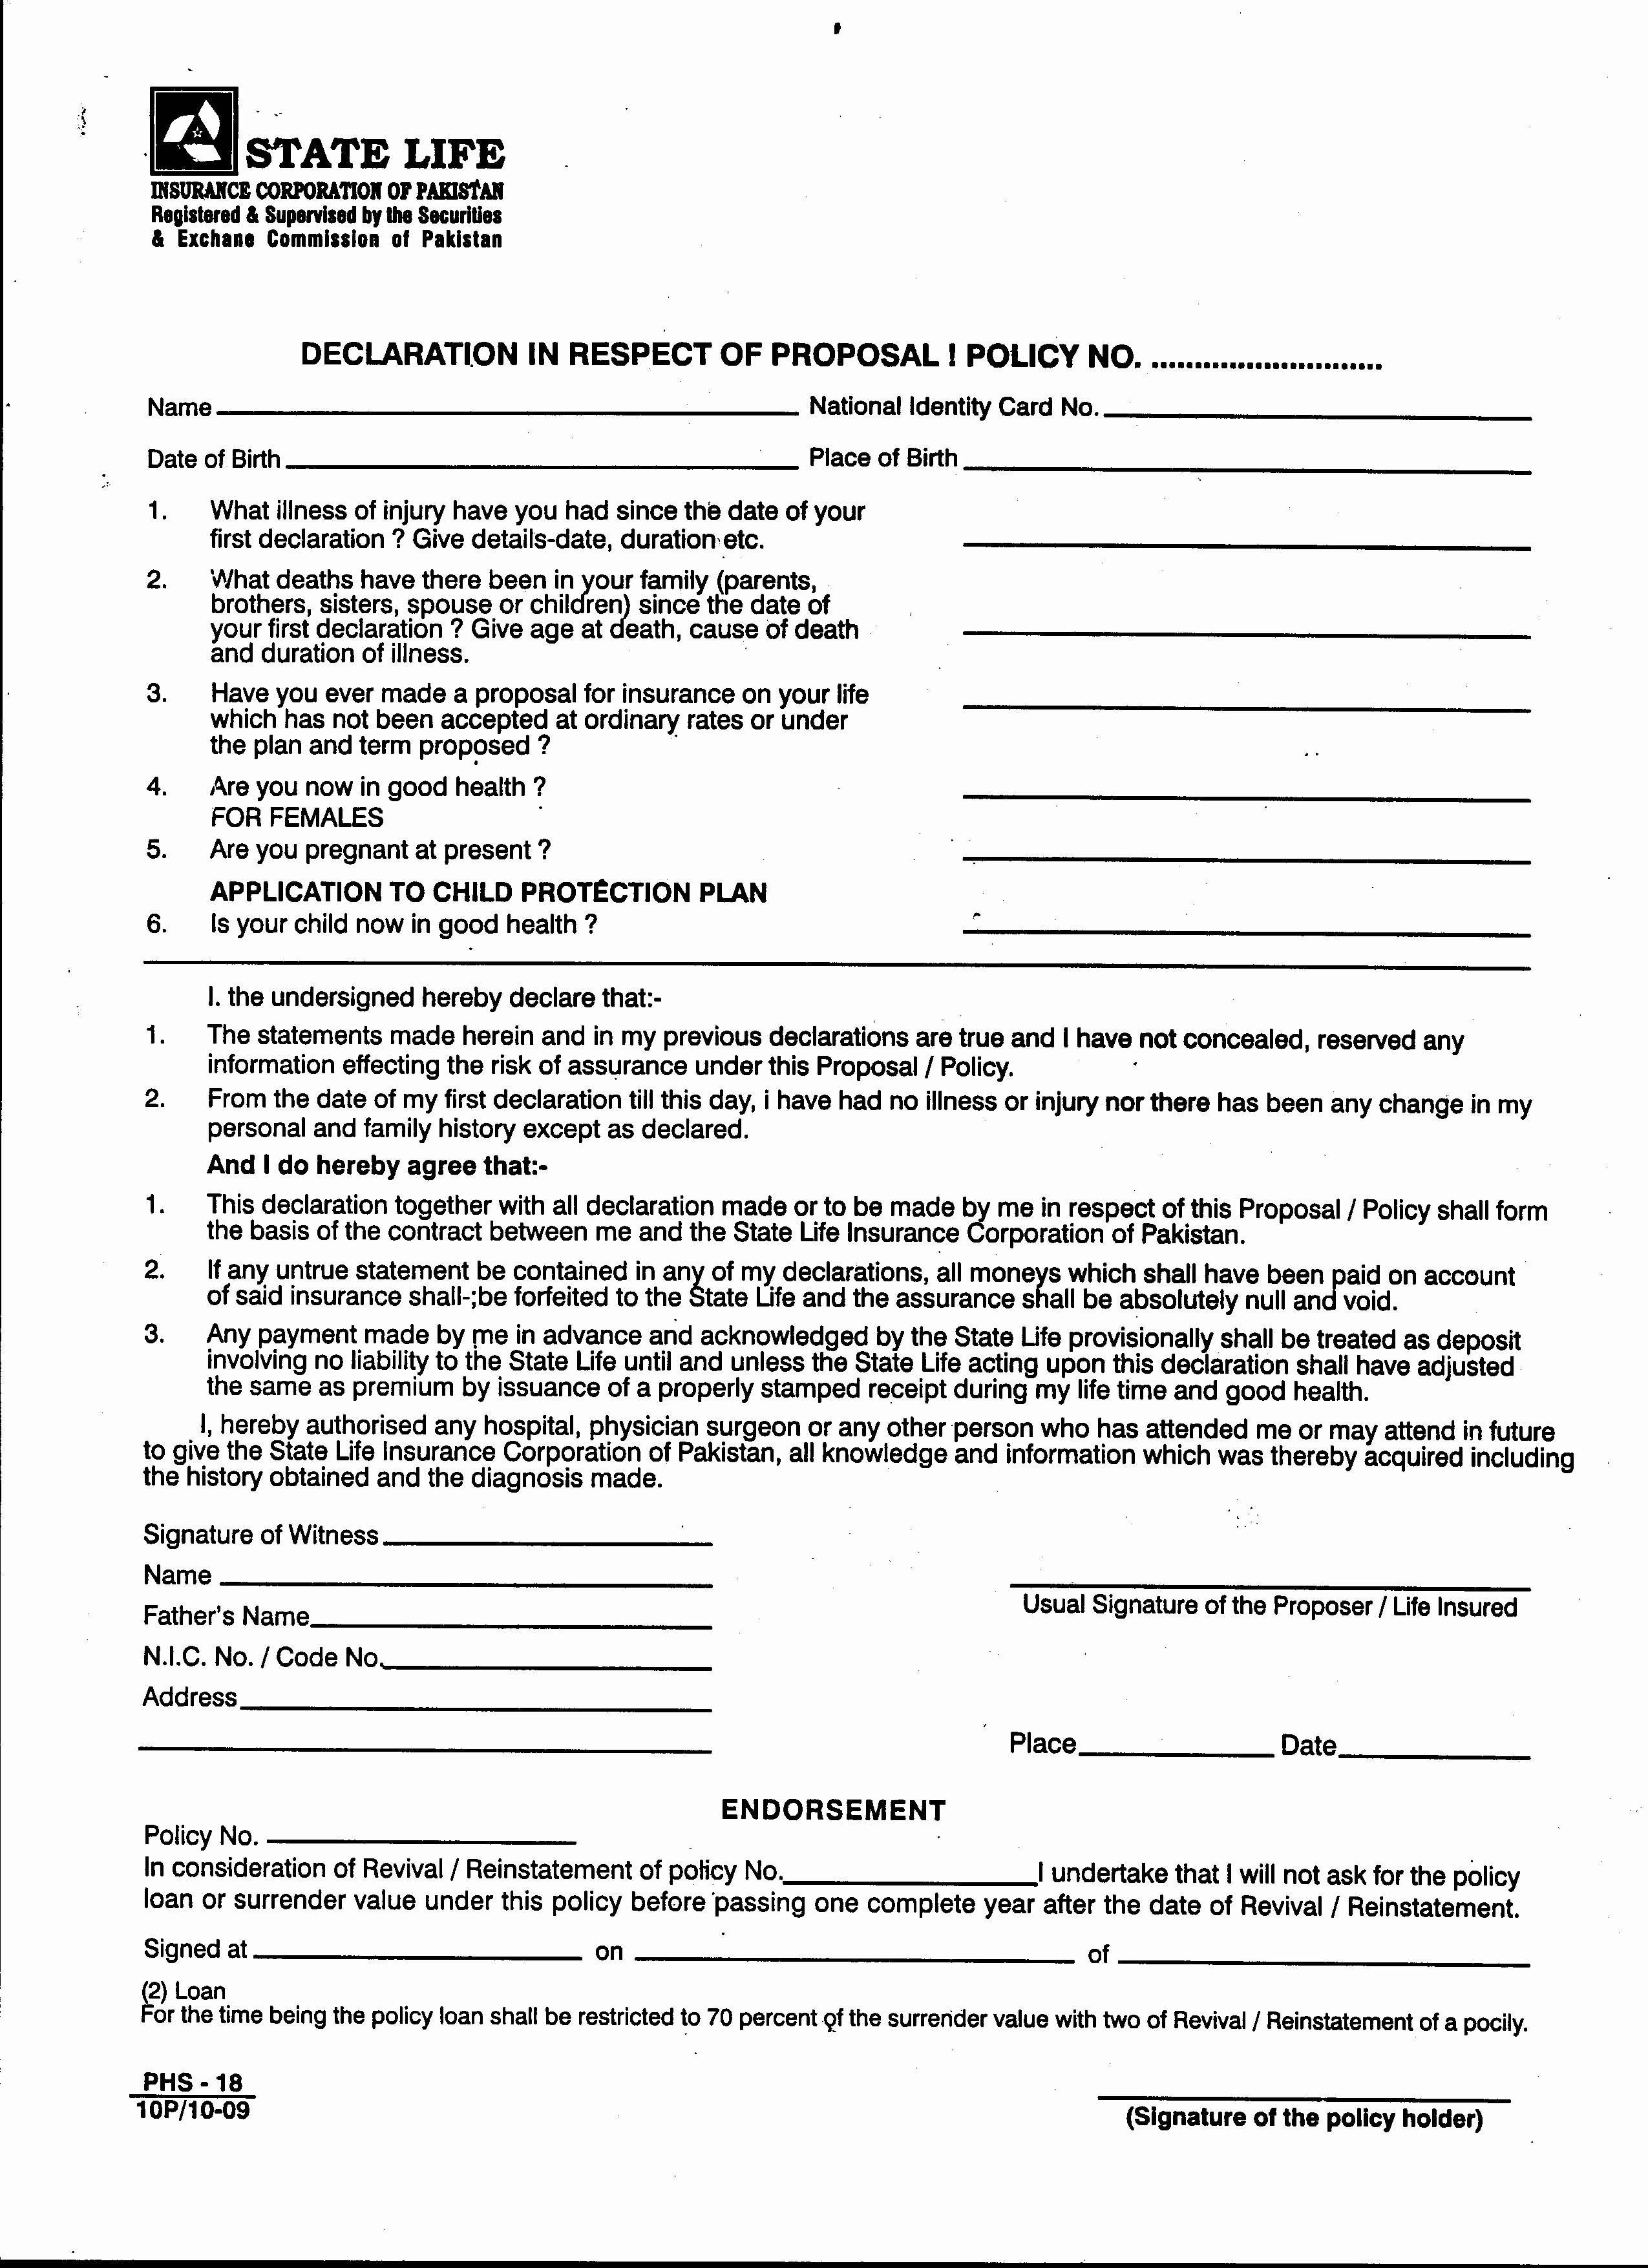 Progressive Auto Insurance Declaration Page Unique Car Document